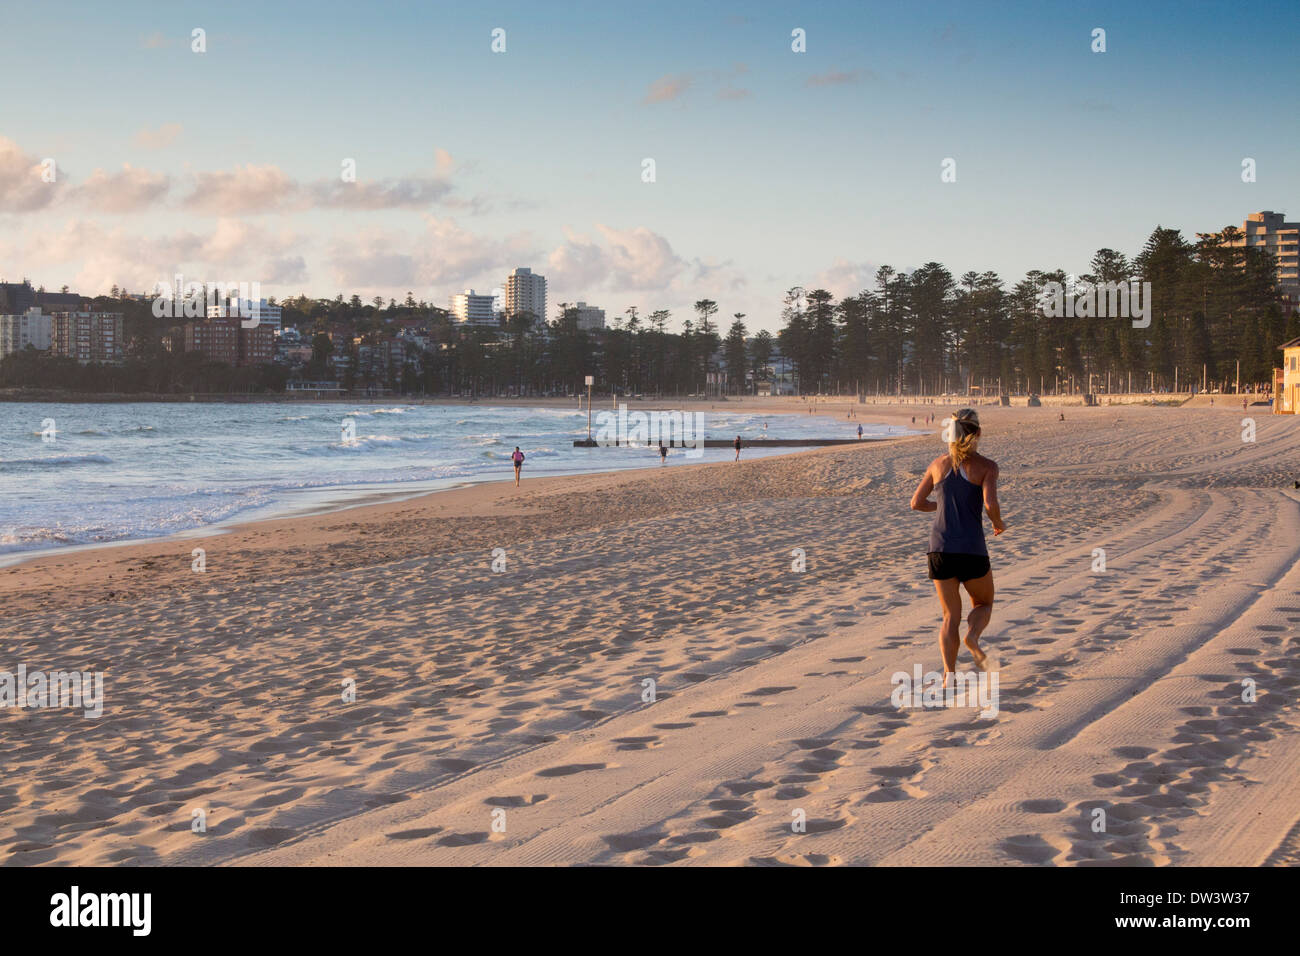 Plage de Manly Steyne Nord à l'aube avec female runner jogger le long sand Sydney NSW Australie Nouvelle Galles du Sud Banque D'Images